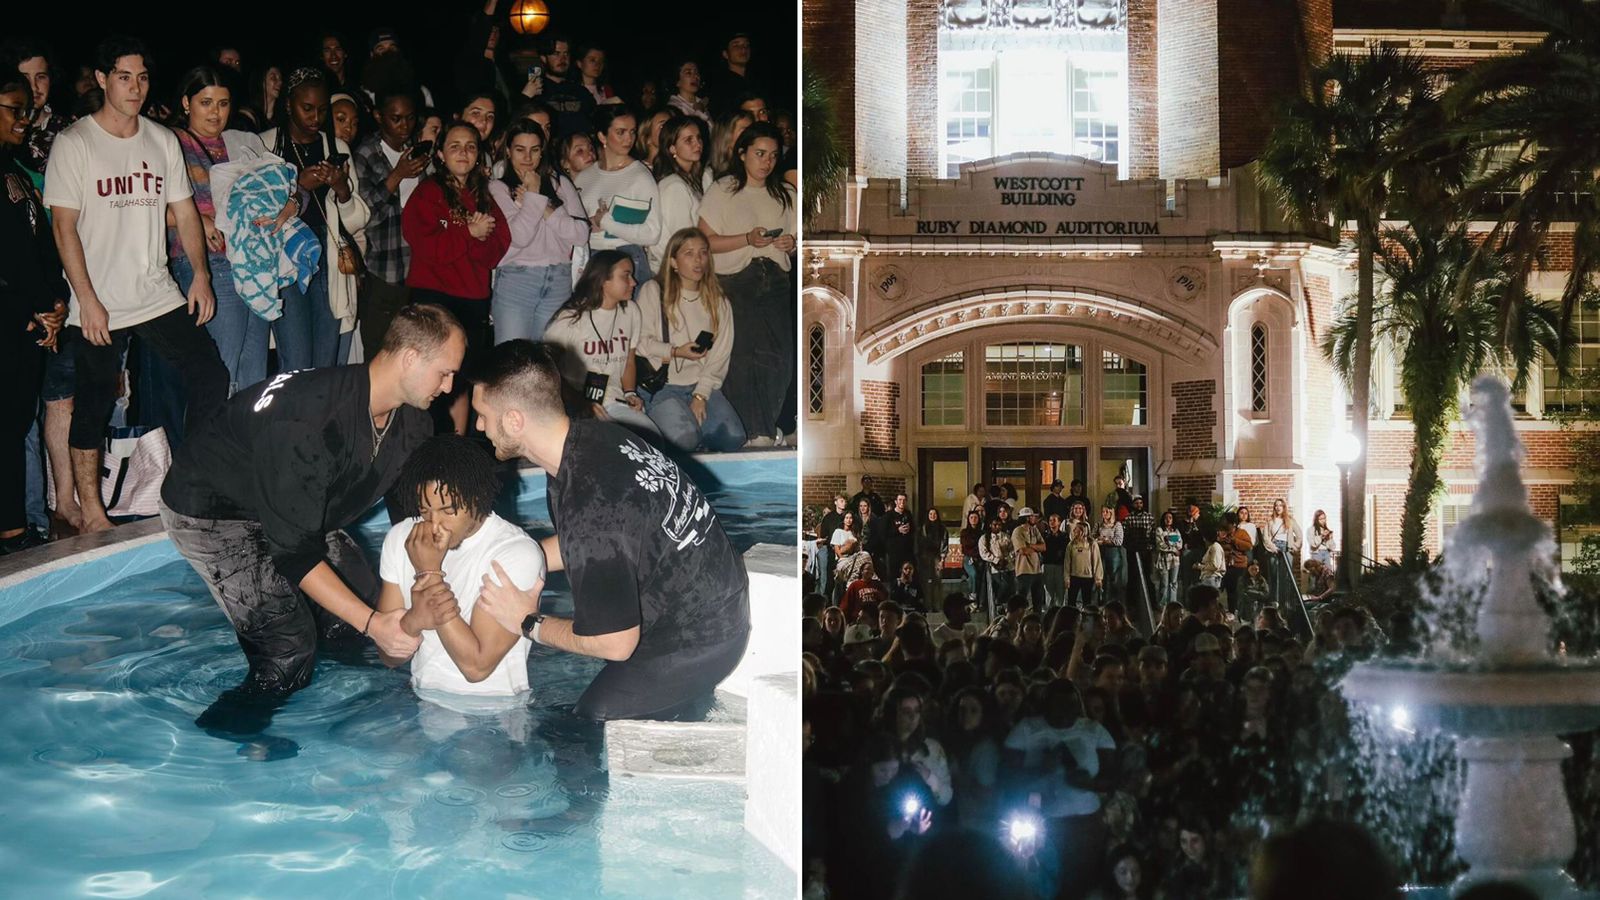 “Avivamento”: Centenas de alunos aceitam Jesus e são batizados em universidade nos EUA